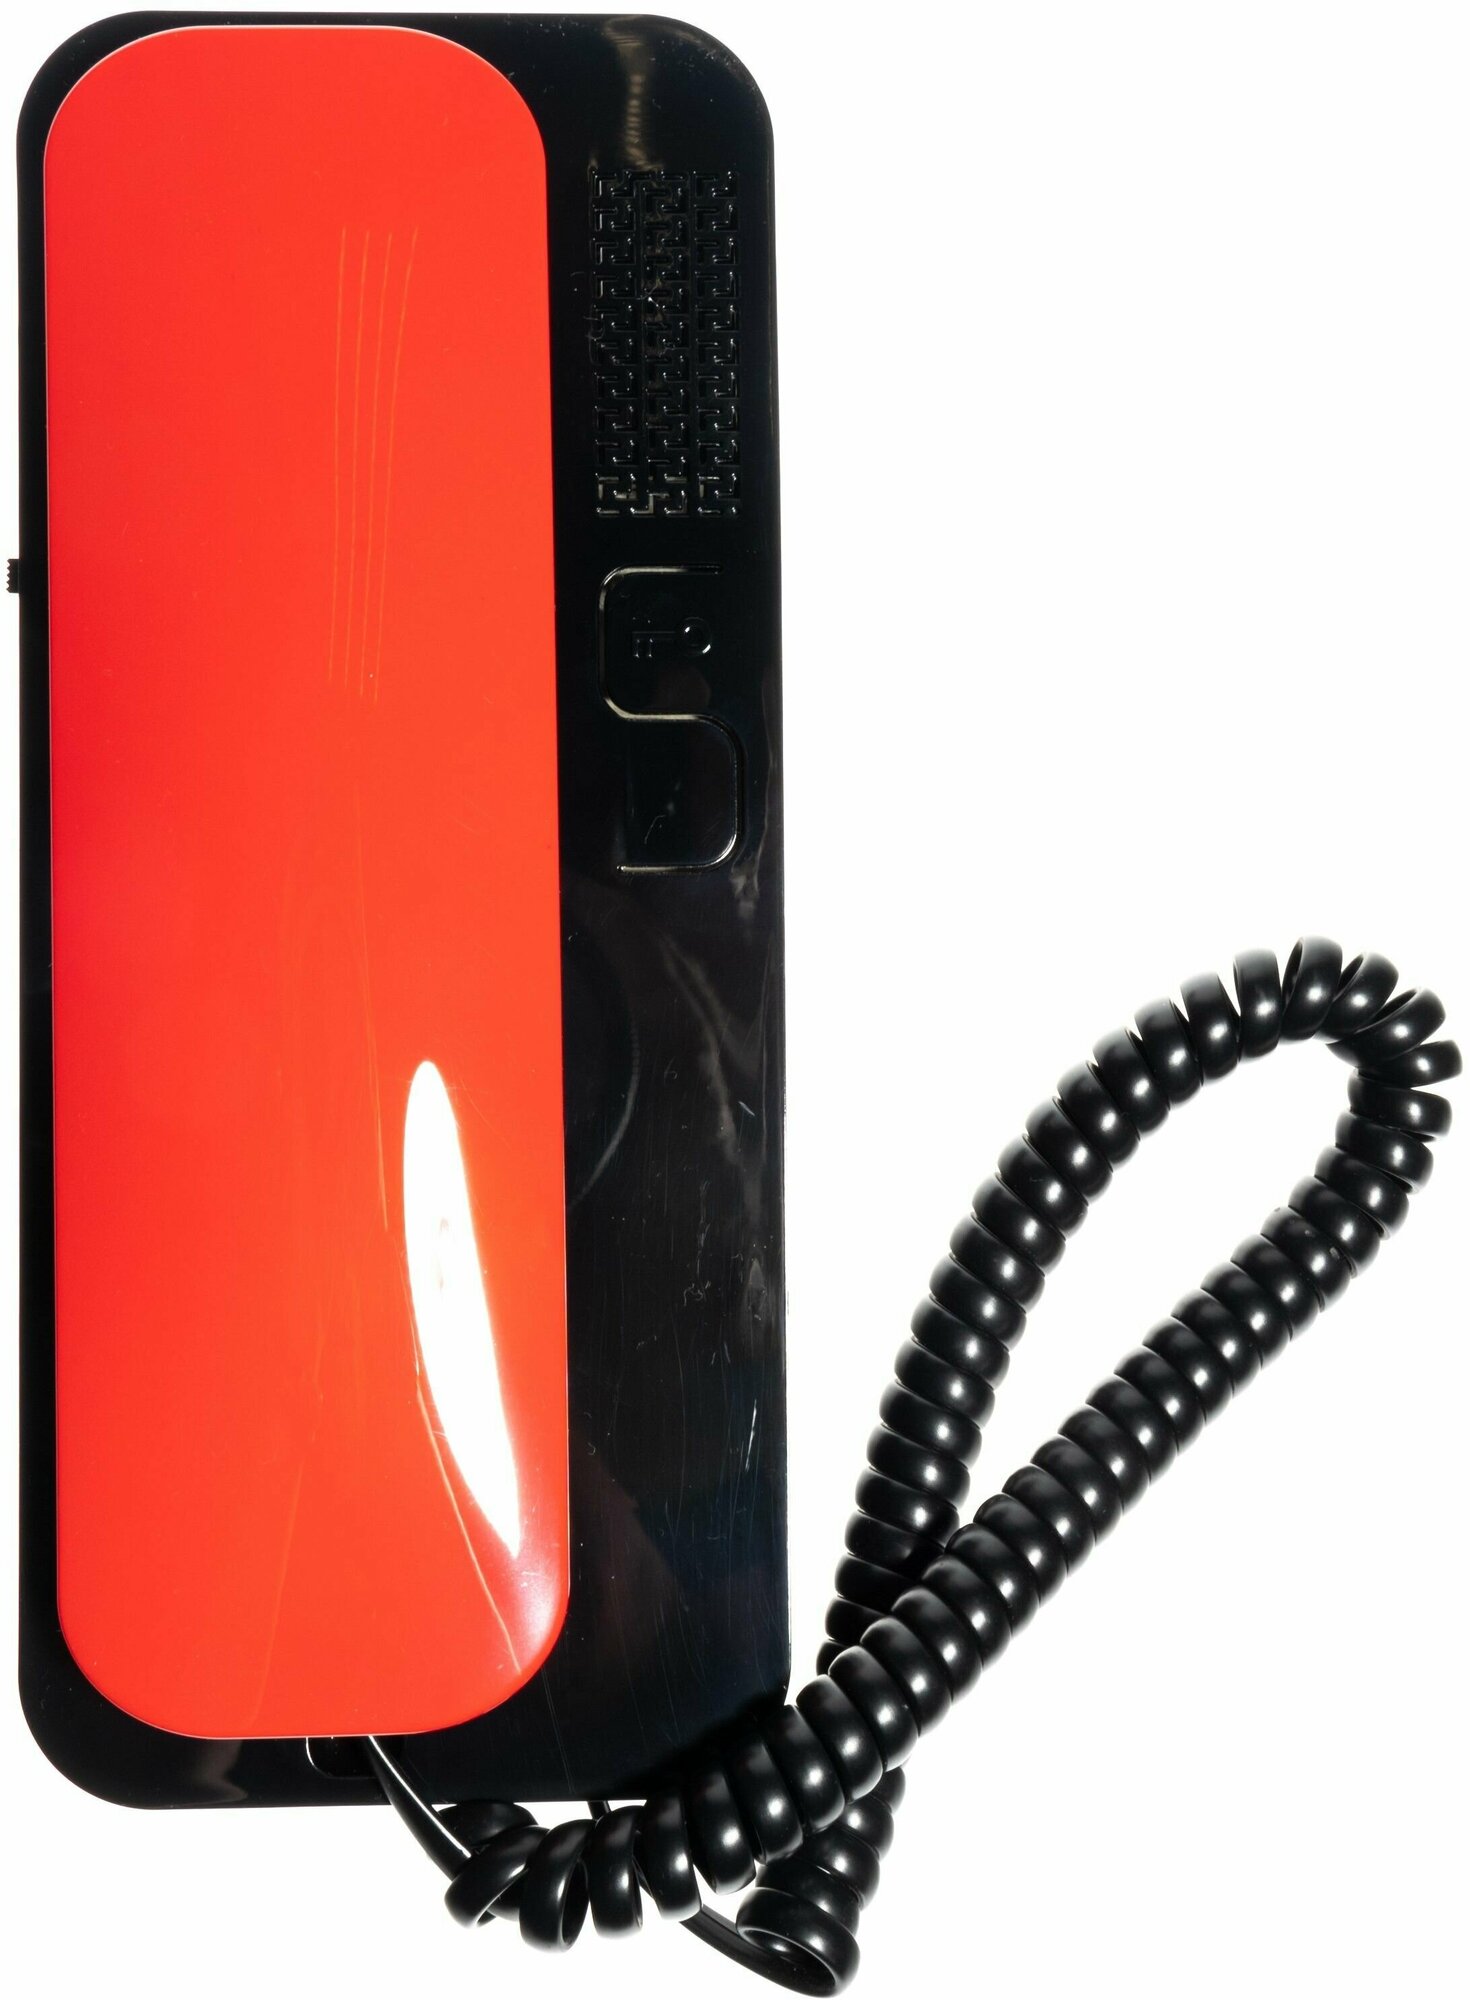 Цифрал Unifon Smart U трубка домофона Красно-Черная (для координатных домофонов CYFRAL, ETLIS, метаком, VIZIT) черная с красной трубкой